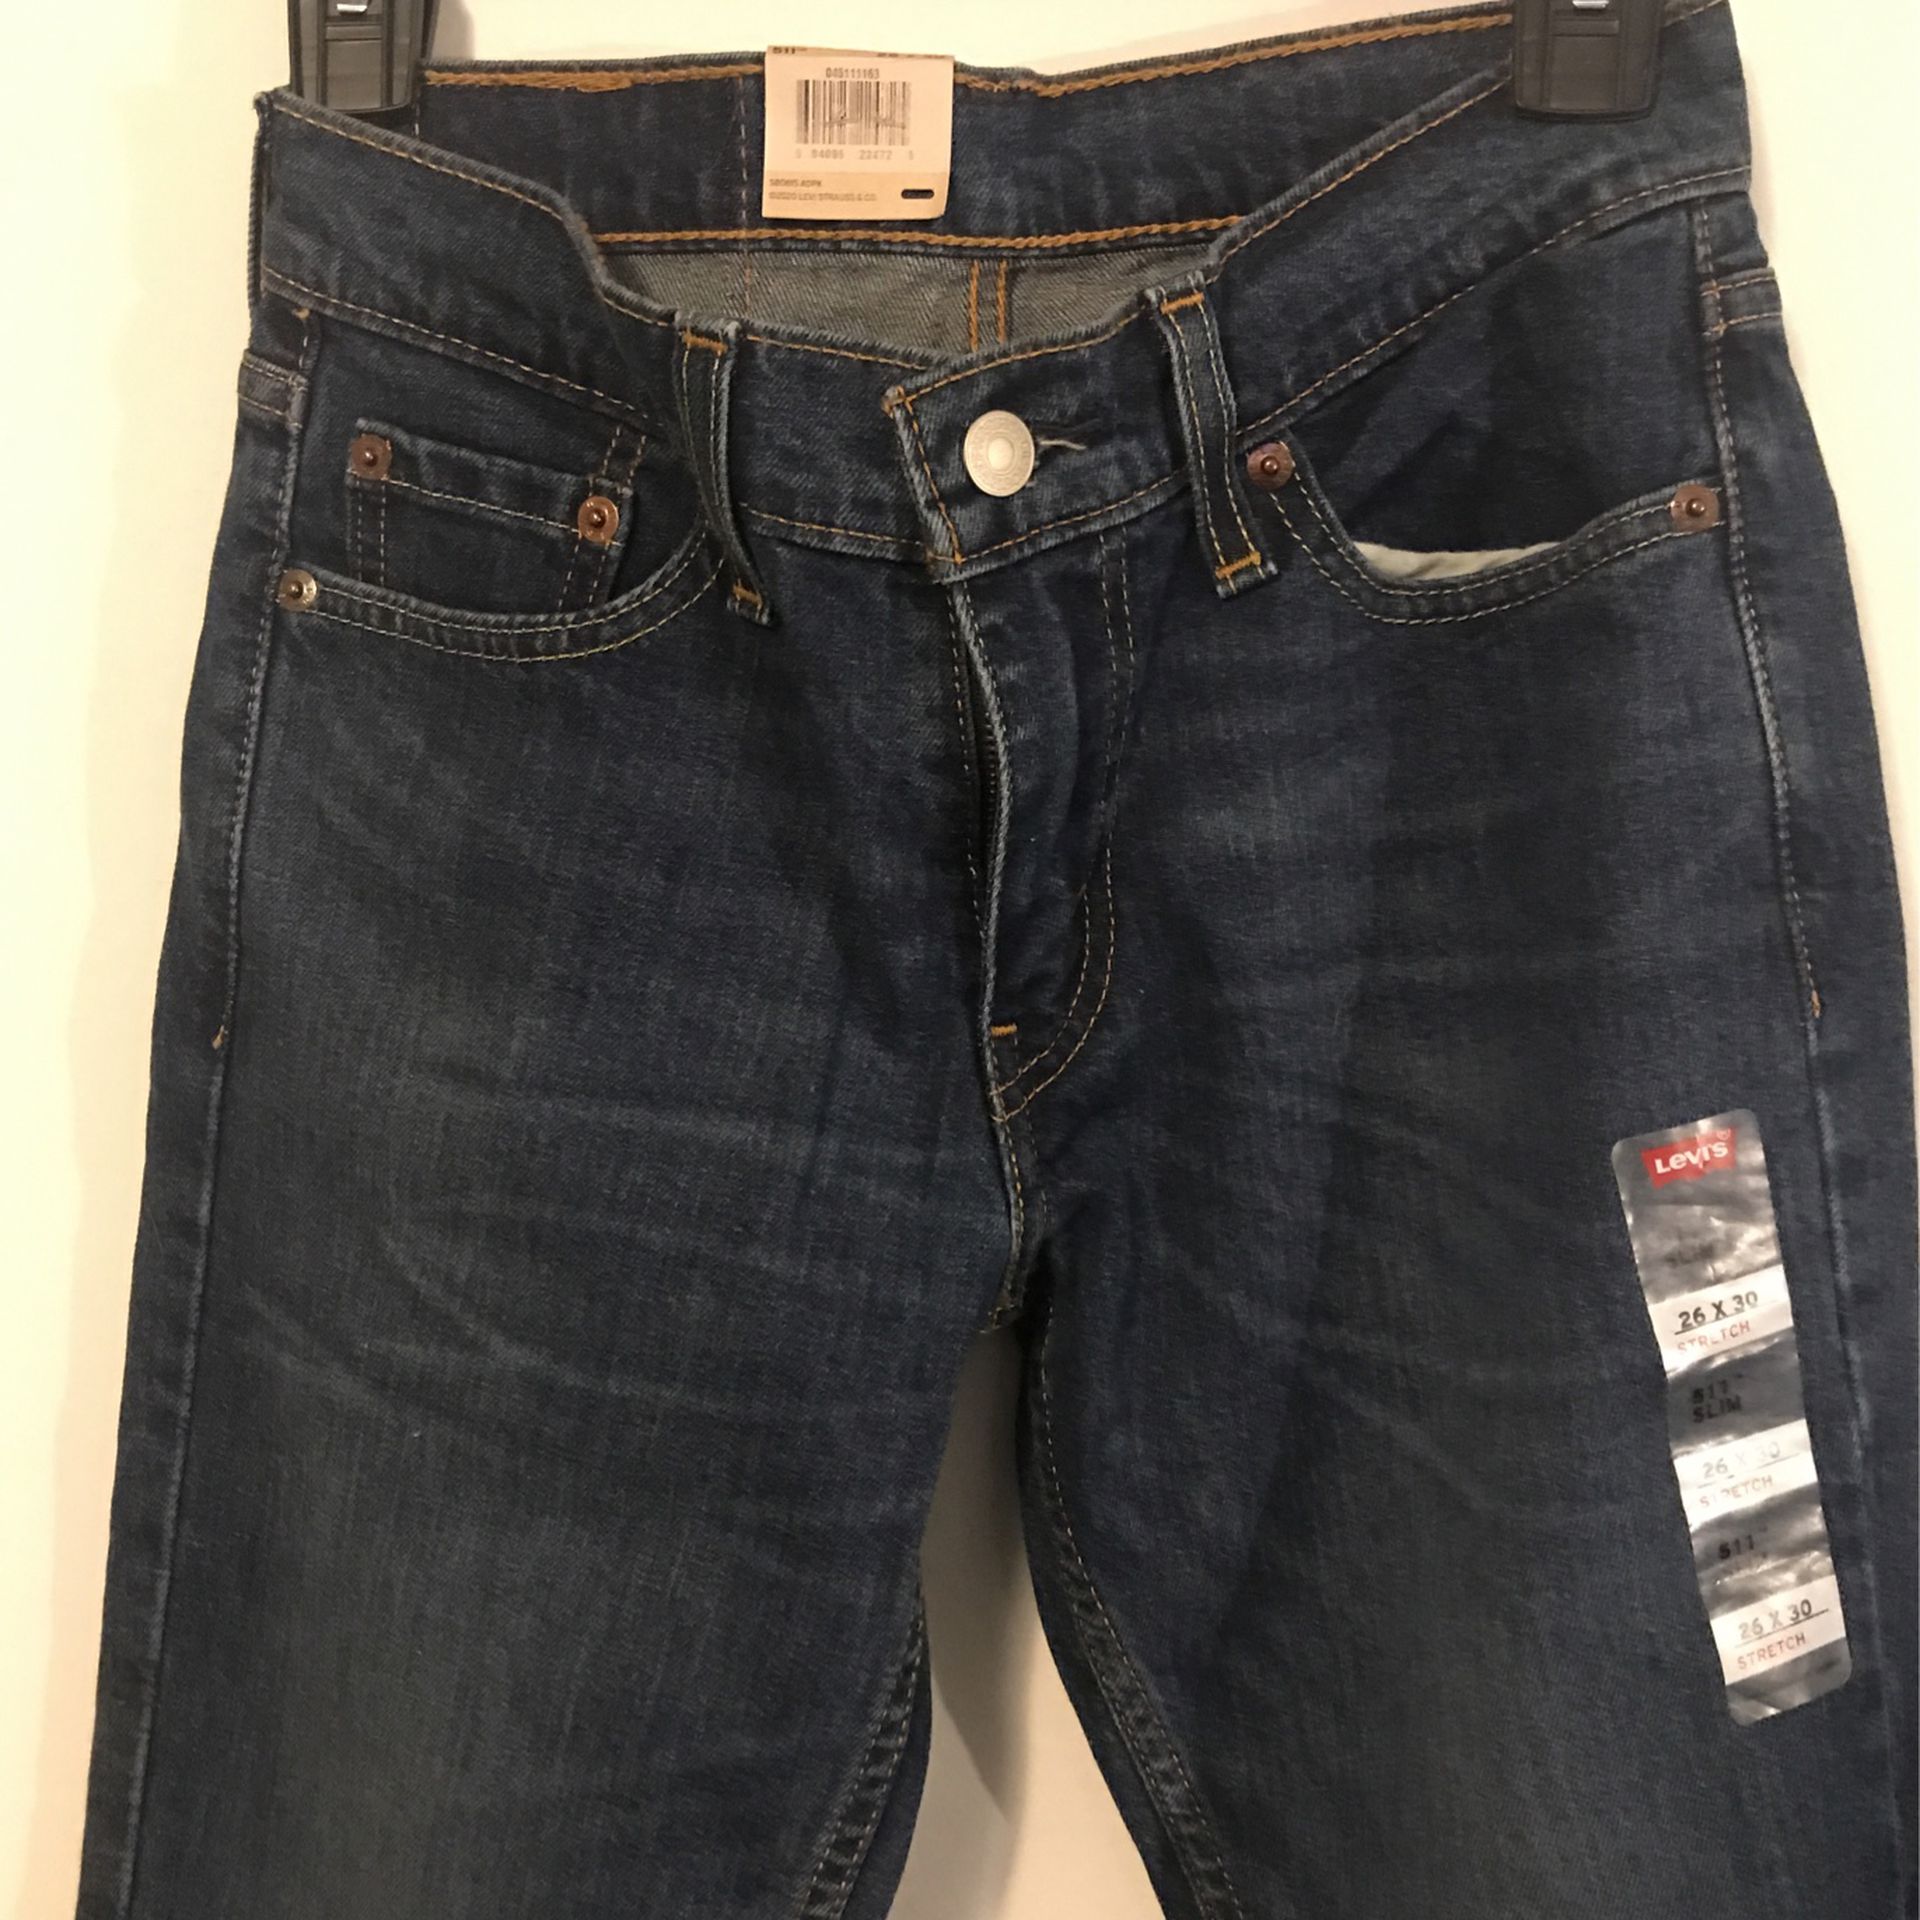 New! Levi’s 511 Slim Stretch Jeans 26 X 30